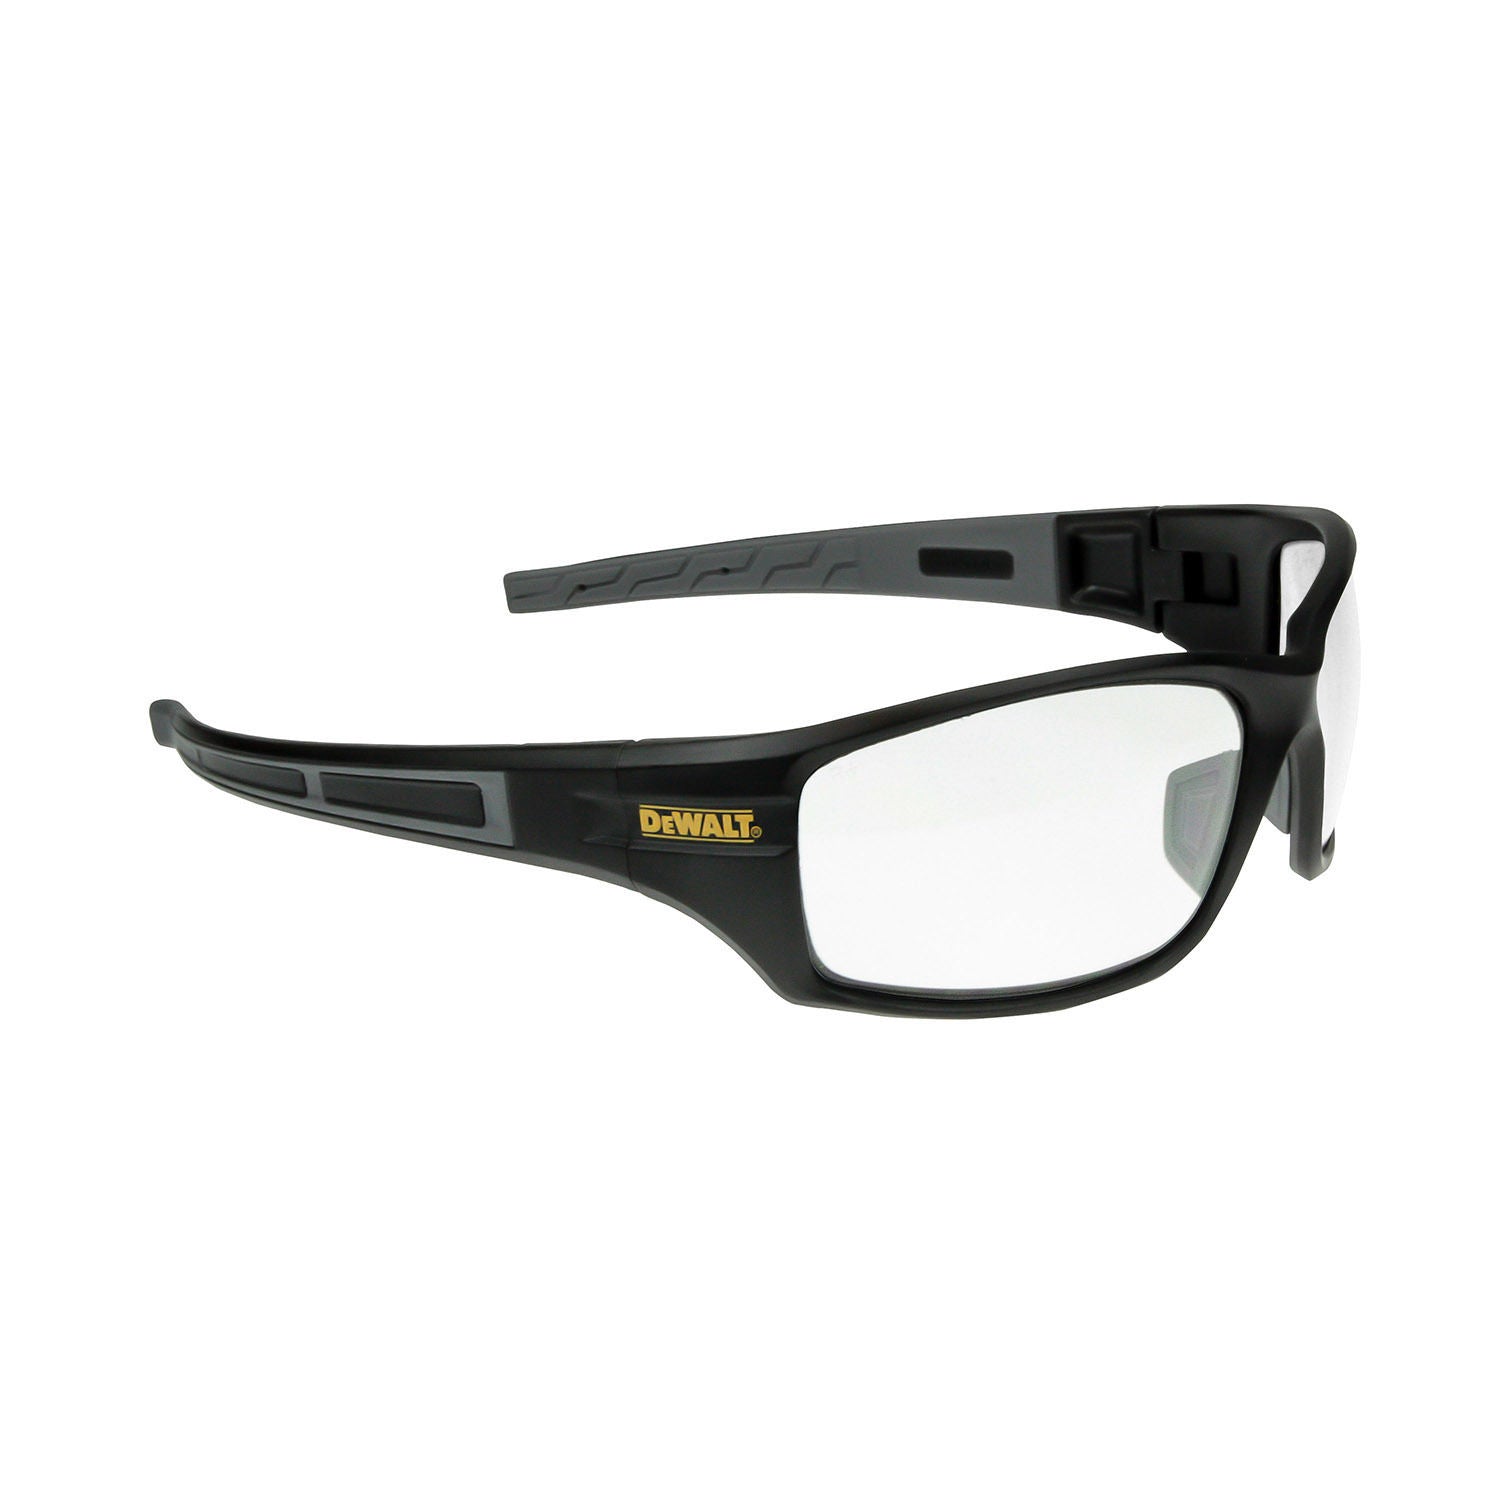 Dewalt Dpg101 1 Auger Safety Glasses Clear Lens Ansi Z871 Us Safety Supplies